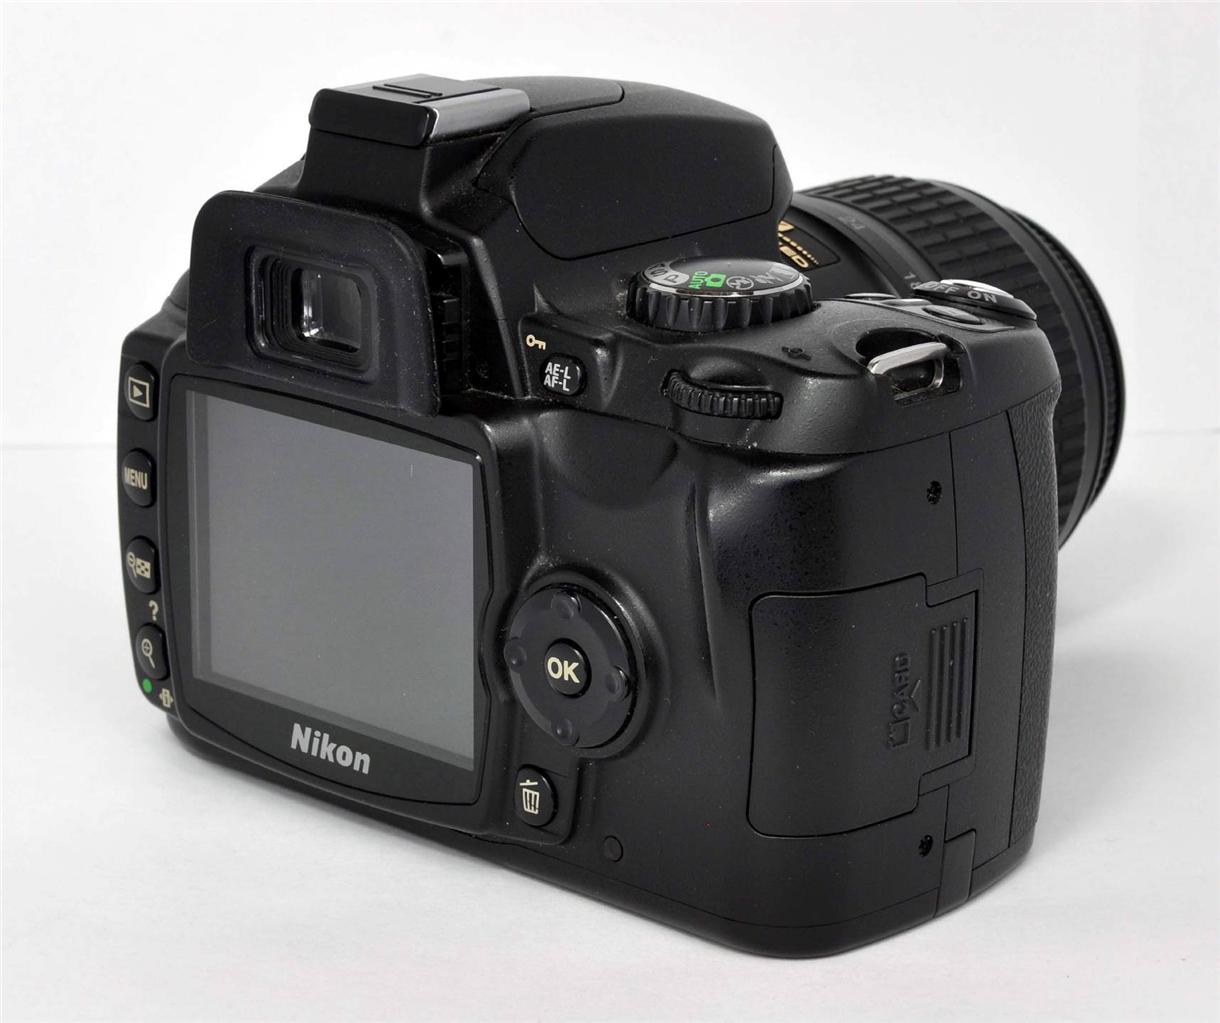 Nikon D40 6.1 MP Digital DSLR Camera w/NIKKOR AF-S 18-55mm 3.5-5.6G II